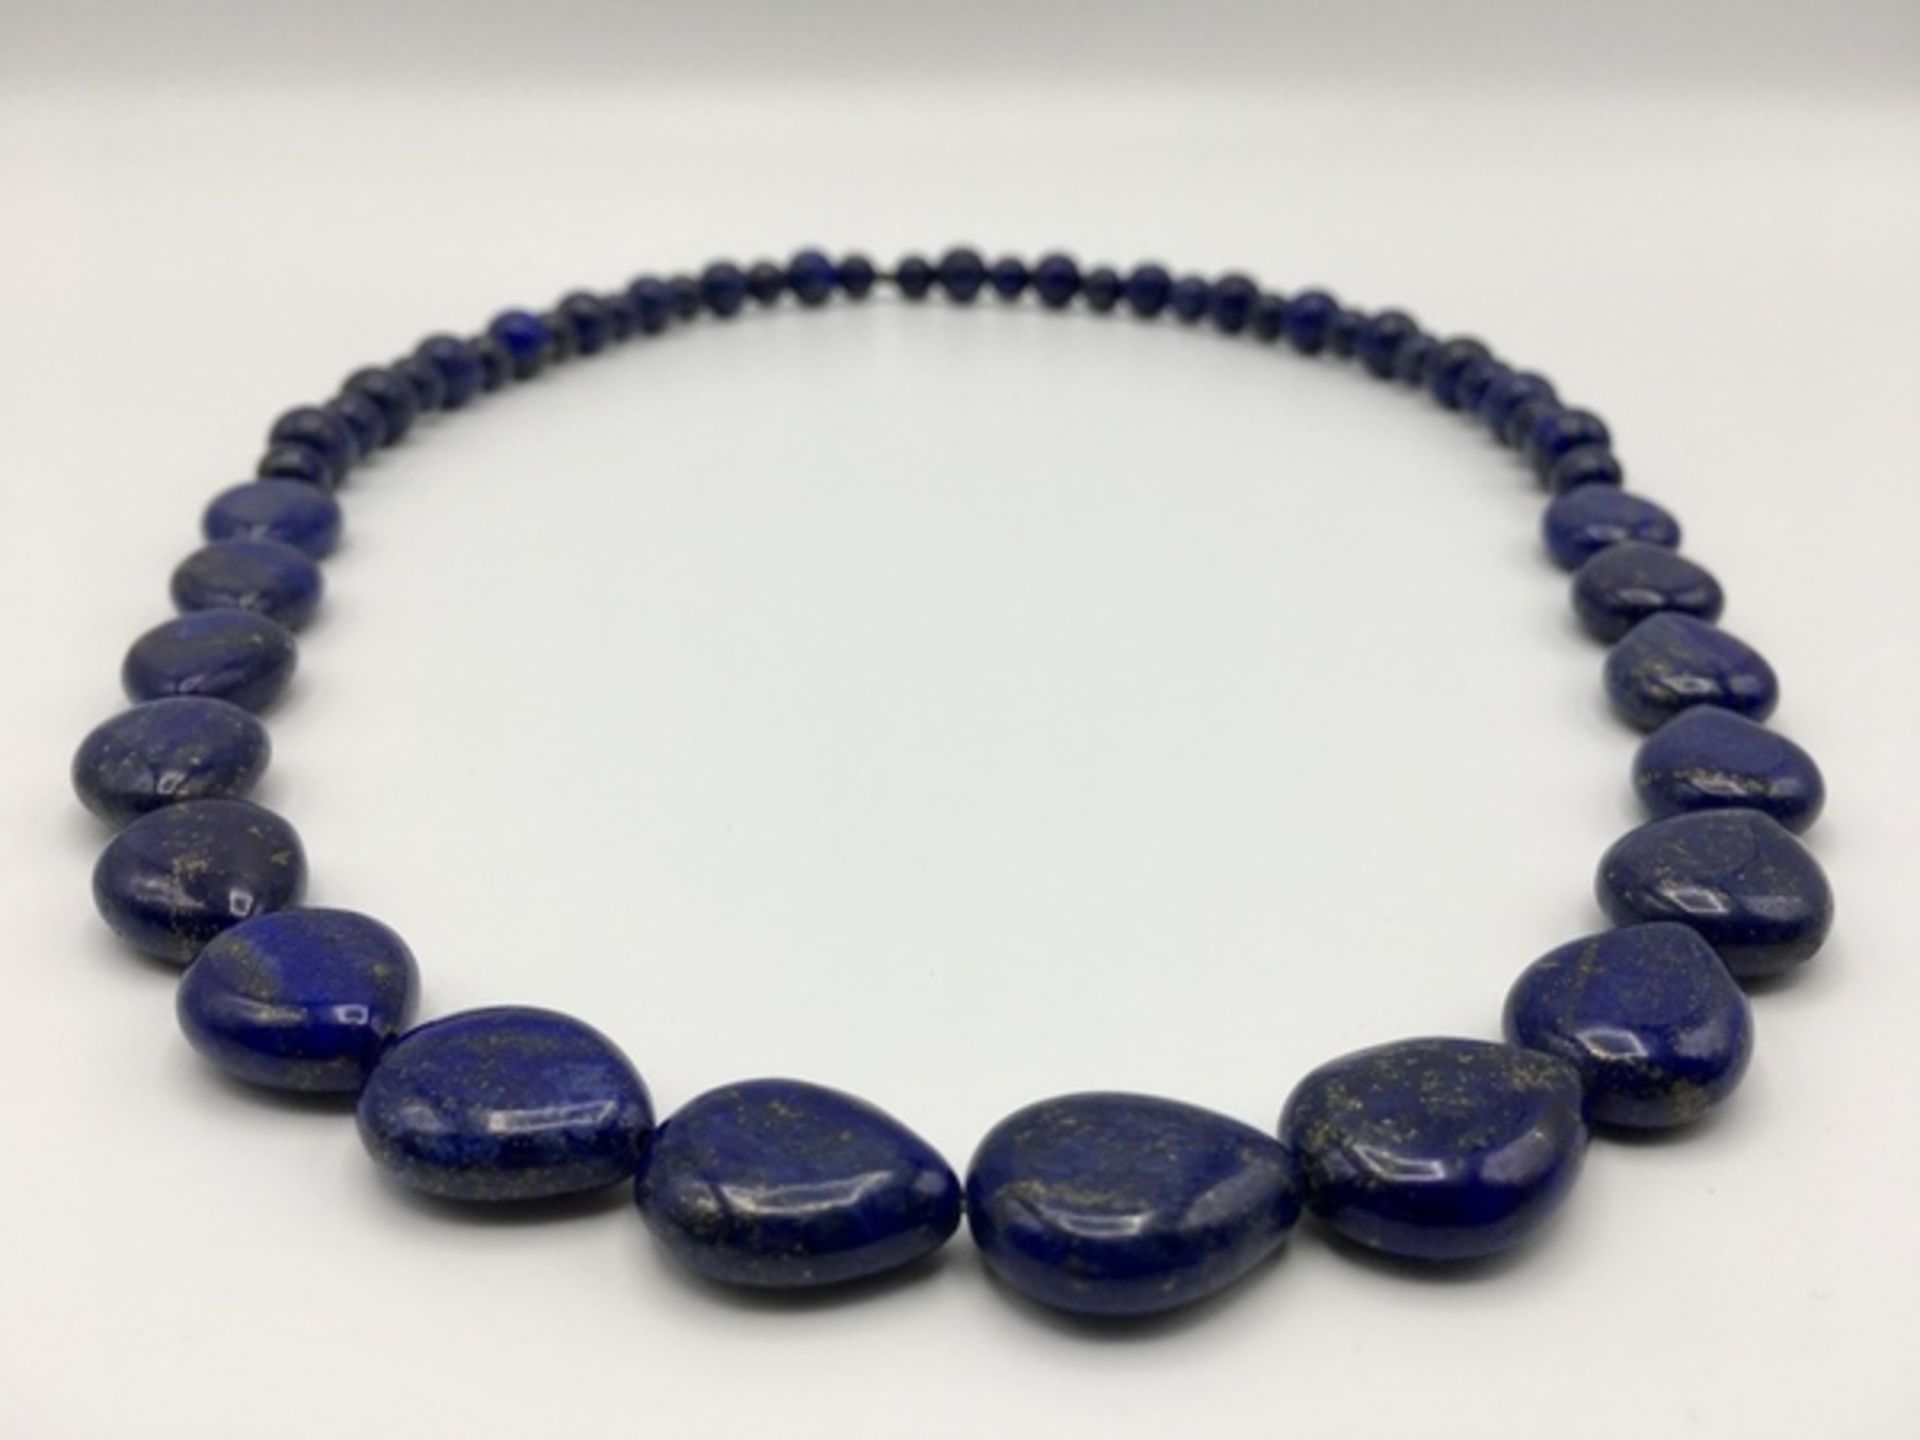 (Sieraden) Lapis Lazuli, halskettingen oorknoppen - Bild 4 aus 6